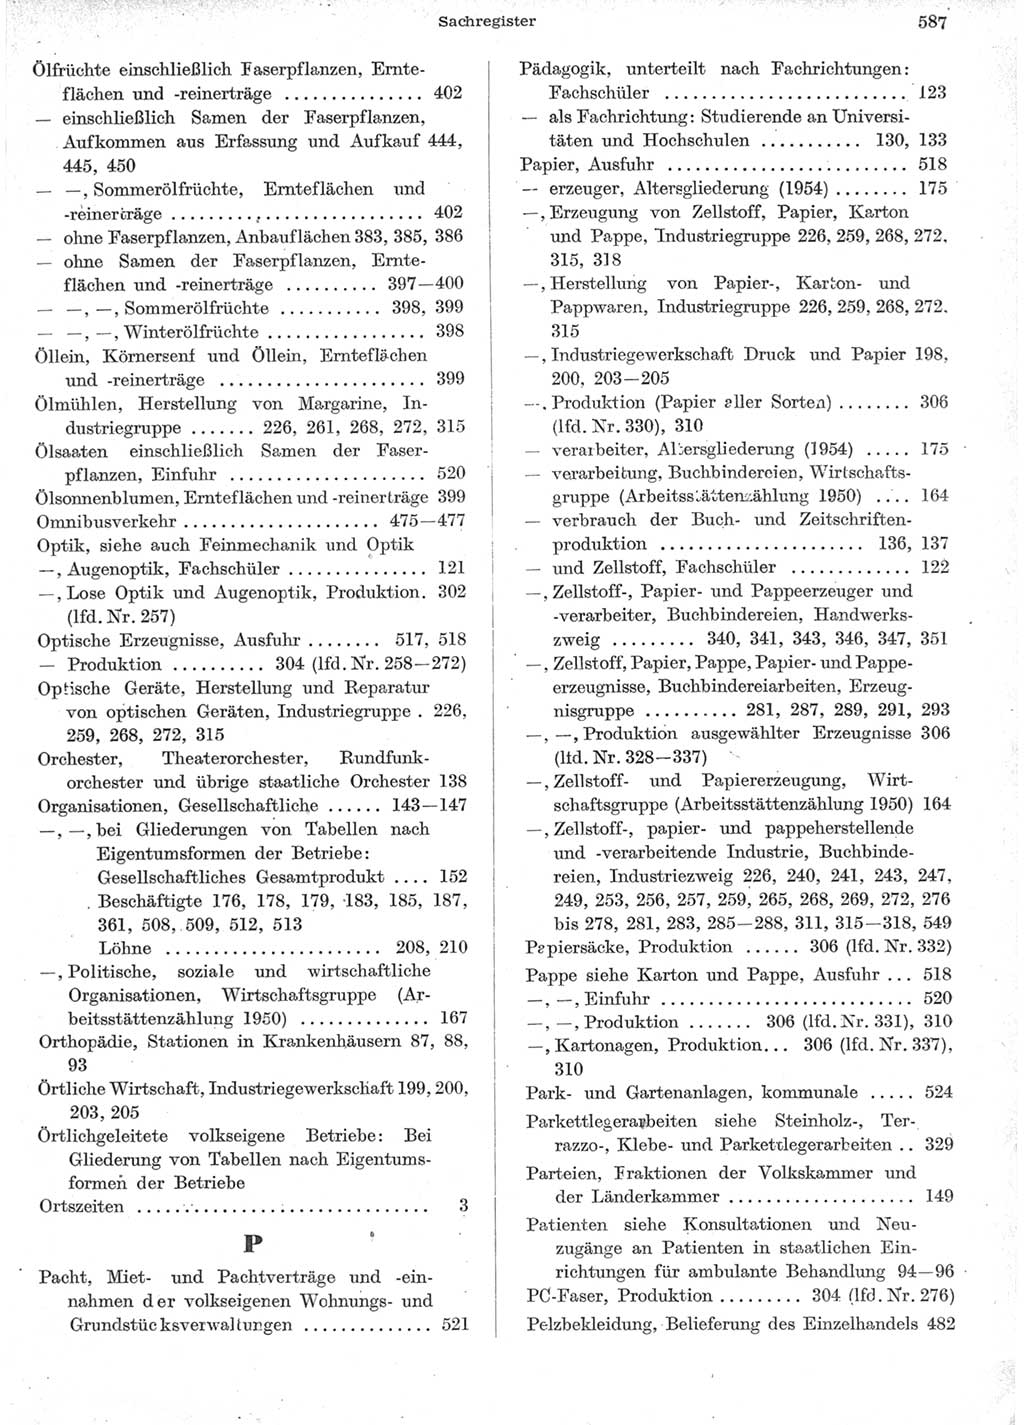 Statistisches Jahrbuch der Deutschen Demokratischen Republik (DDR) 1957, Seite 587 (Stat. Jb. DDR 1957, S. 587)